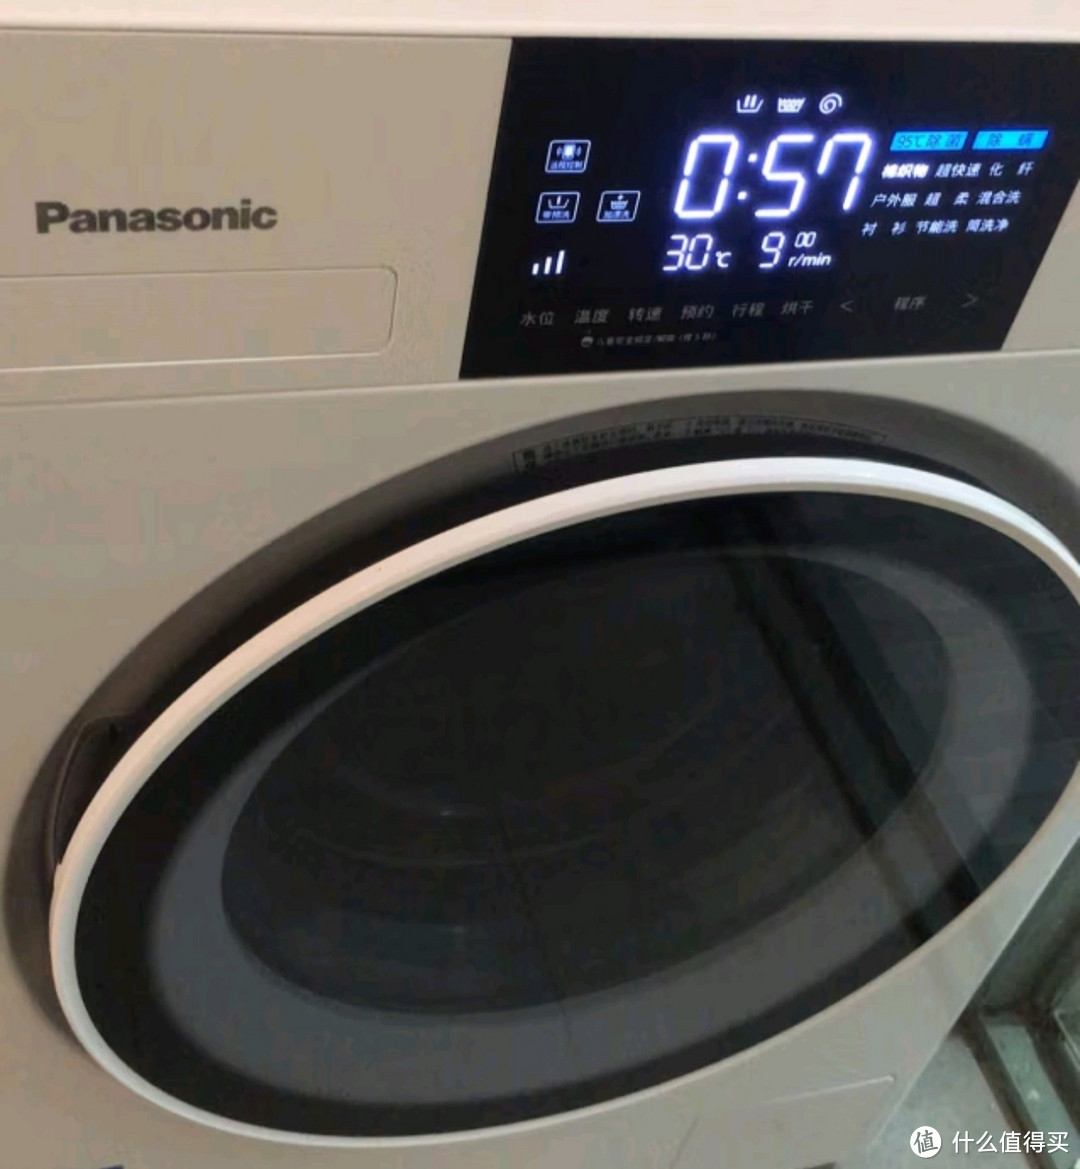 松下洗衣机滚筒全自动 10公斤洗烘一体 泡沫净 光动银除菌 双极除螨 BLDC变频电机 XQG100-ND11C